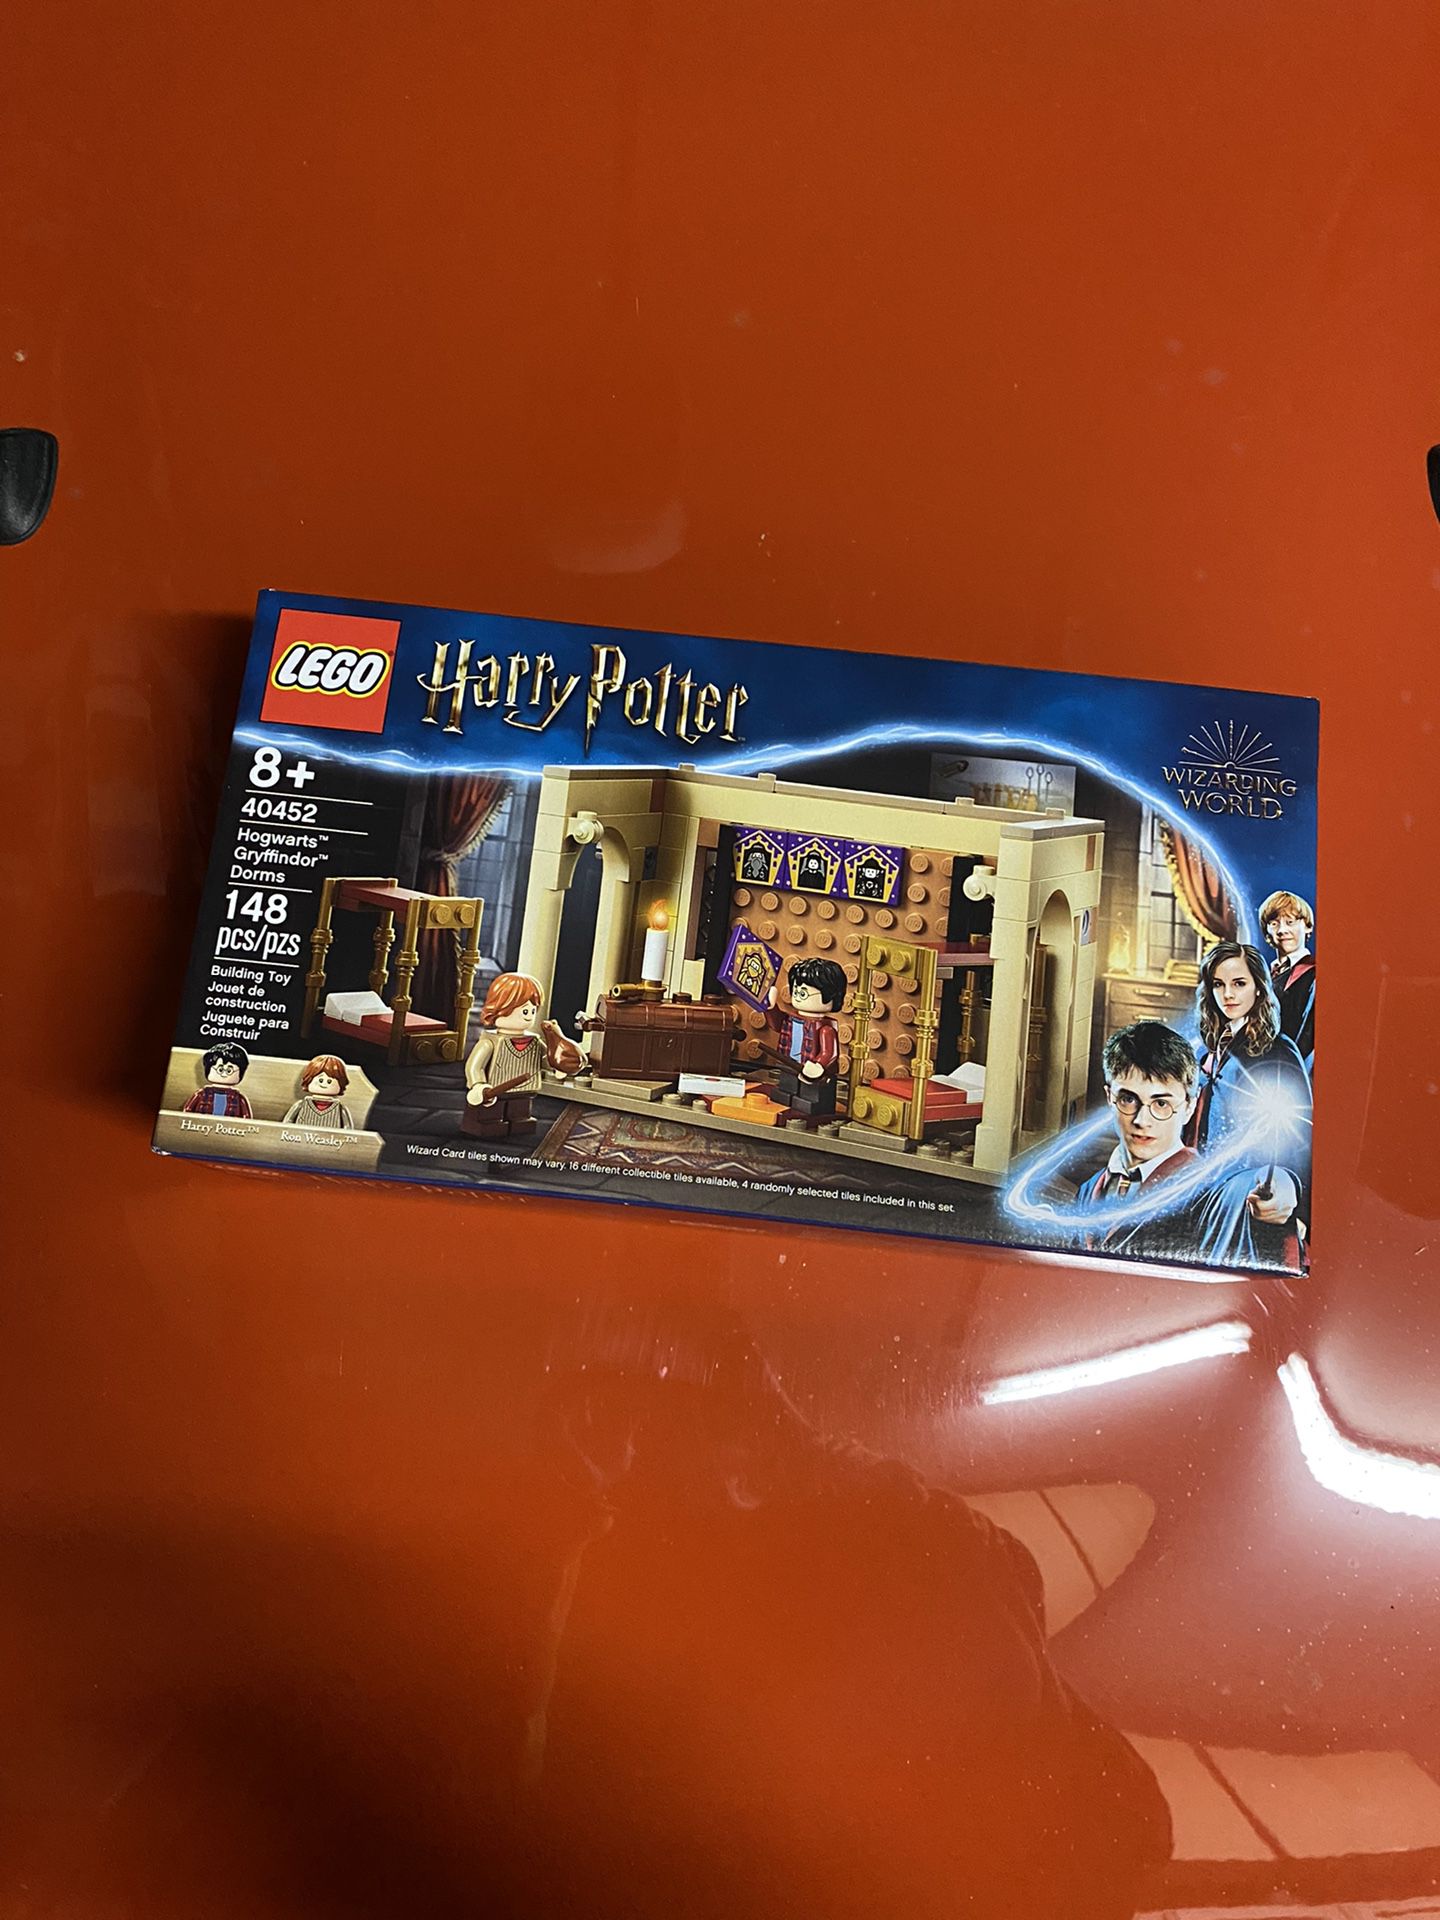 LEGO Harry Potter 40452 Hogwarts Gryffindor Dorms In Hand